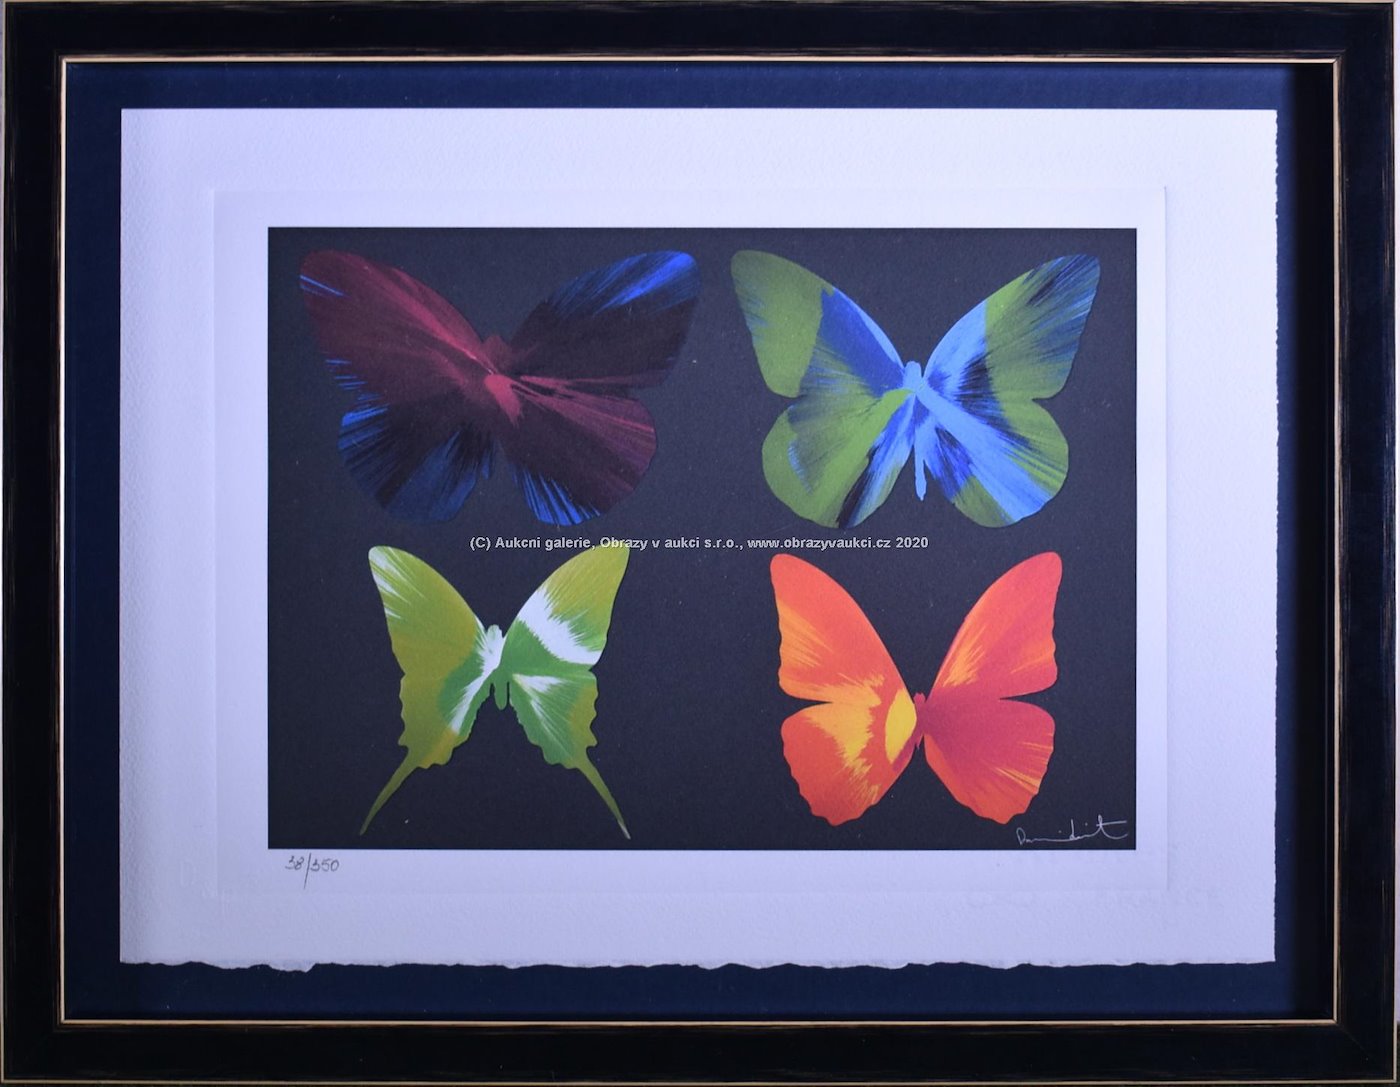 Damien Hirst - Beautiful butterflies